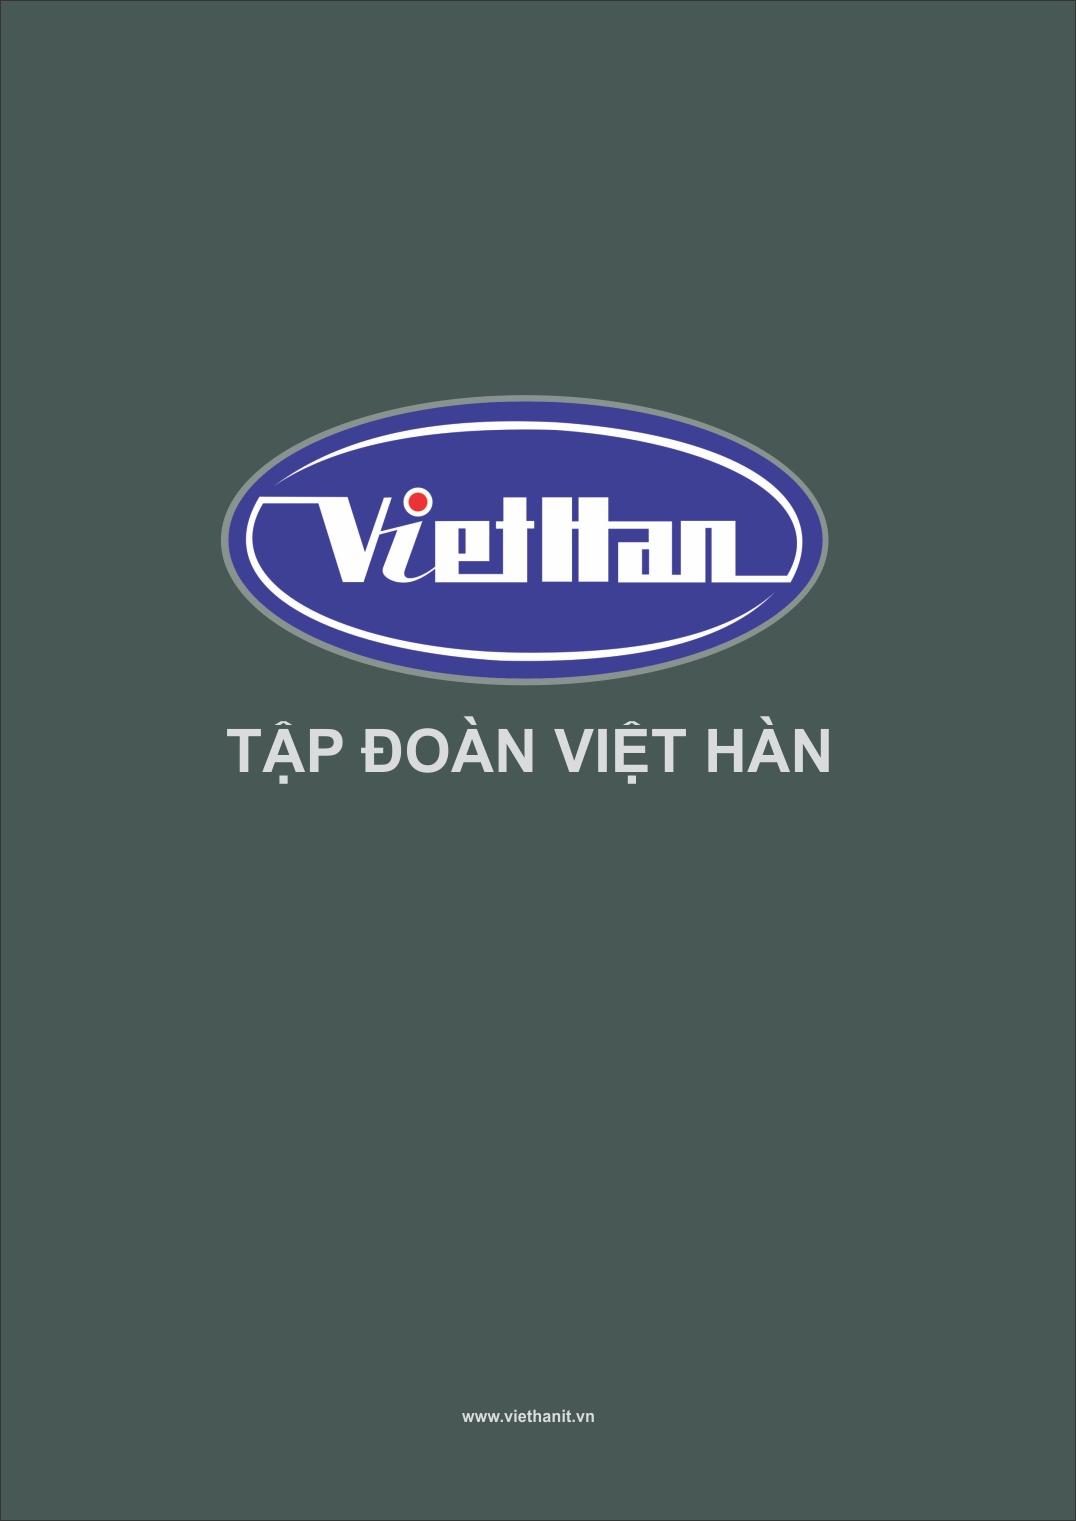 Profile Việt Hàn